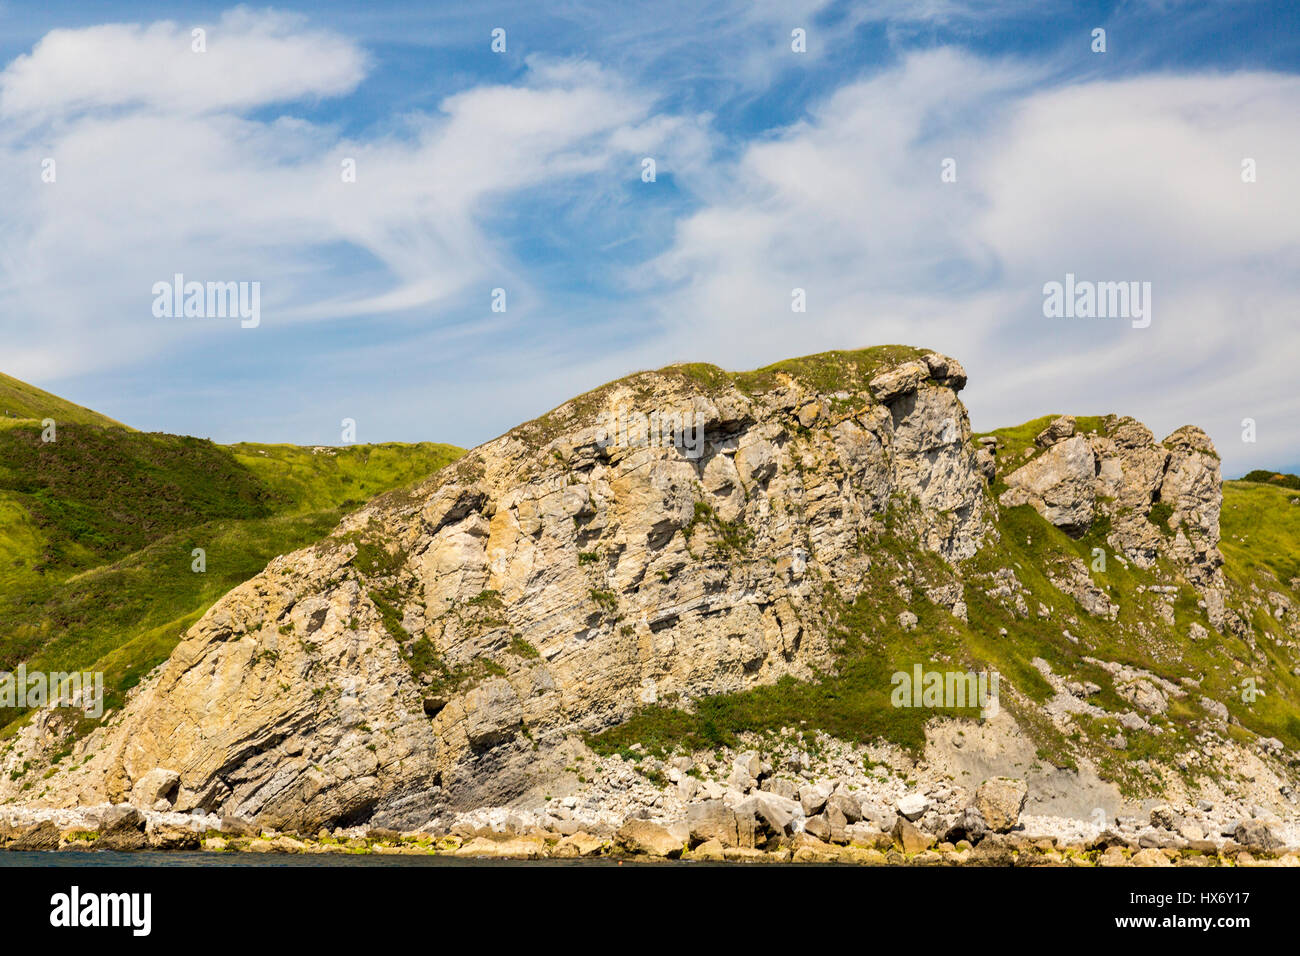 Die Lulworth "Zerdrücken" Schichten "Rippe" Reise von Lulworth Cove zu Durdle Door an der Jurassic Coast, Dorset, England angesehen rock Stockfoto